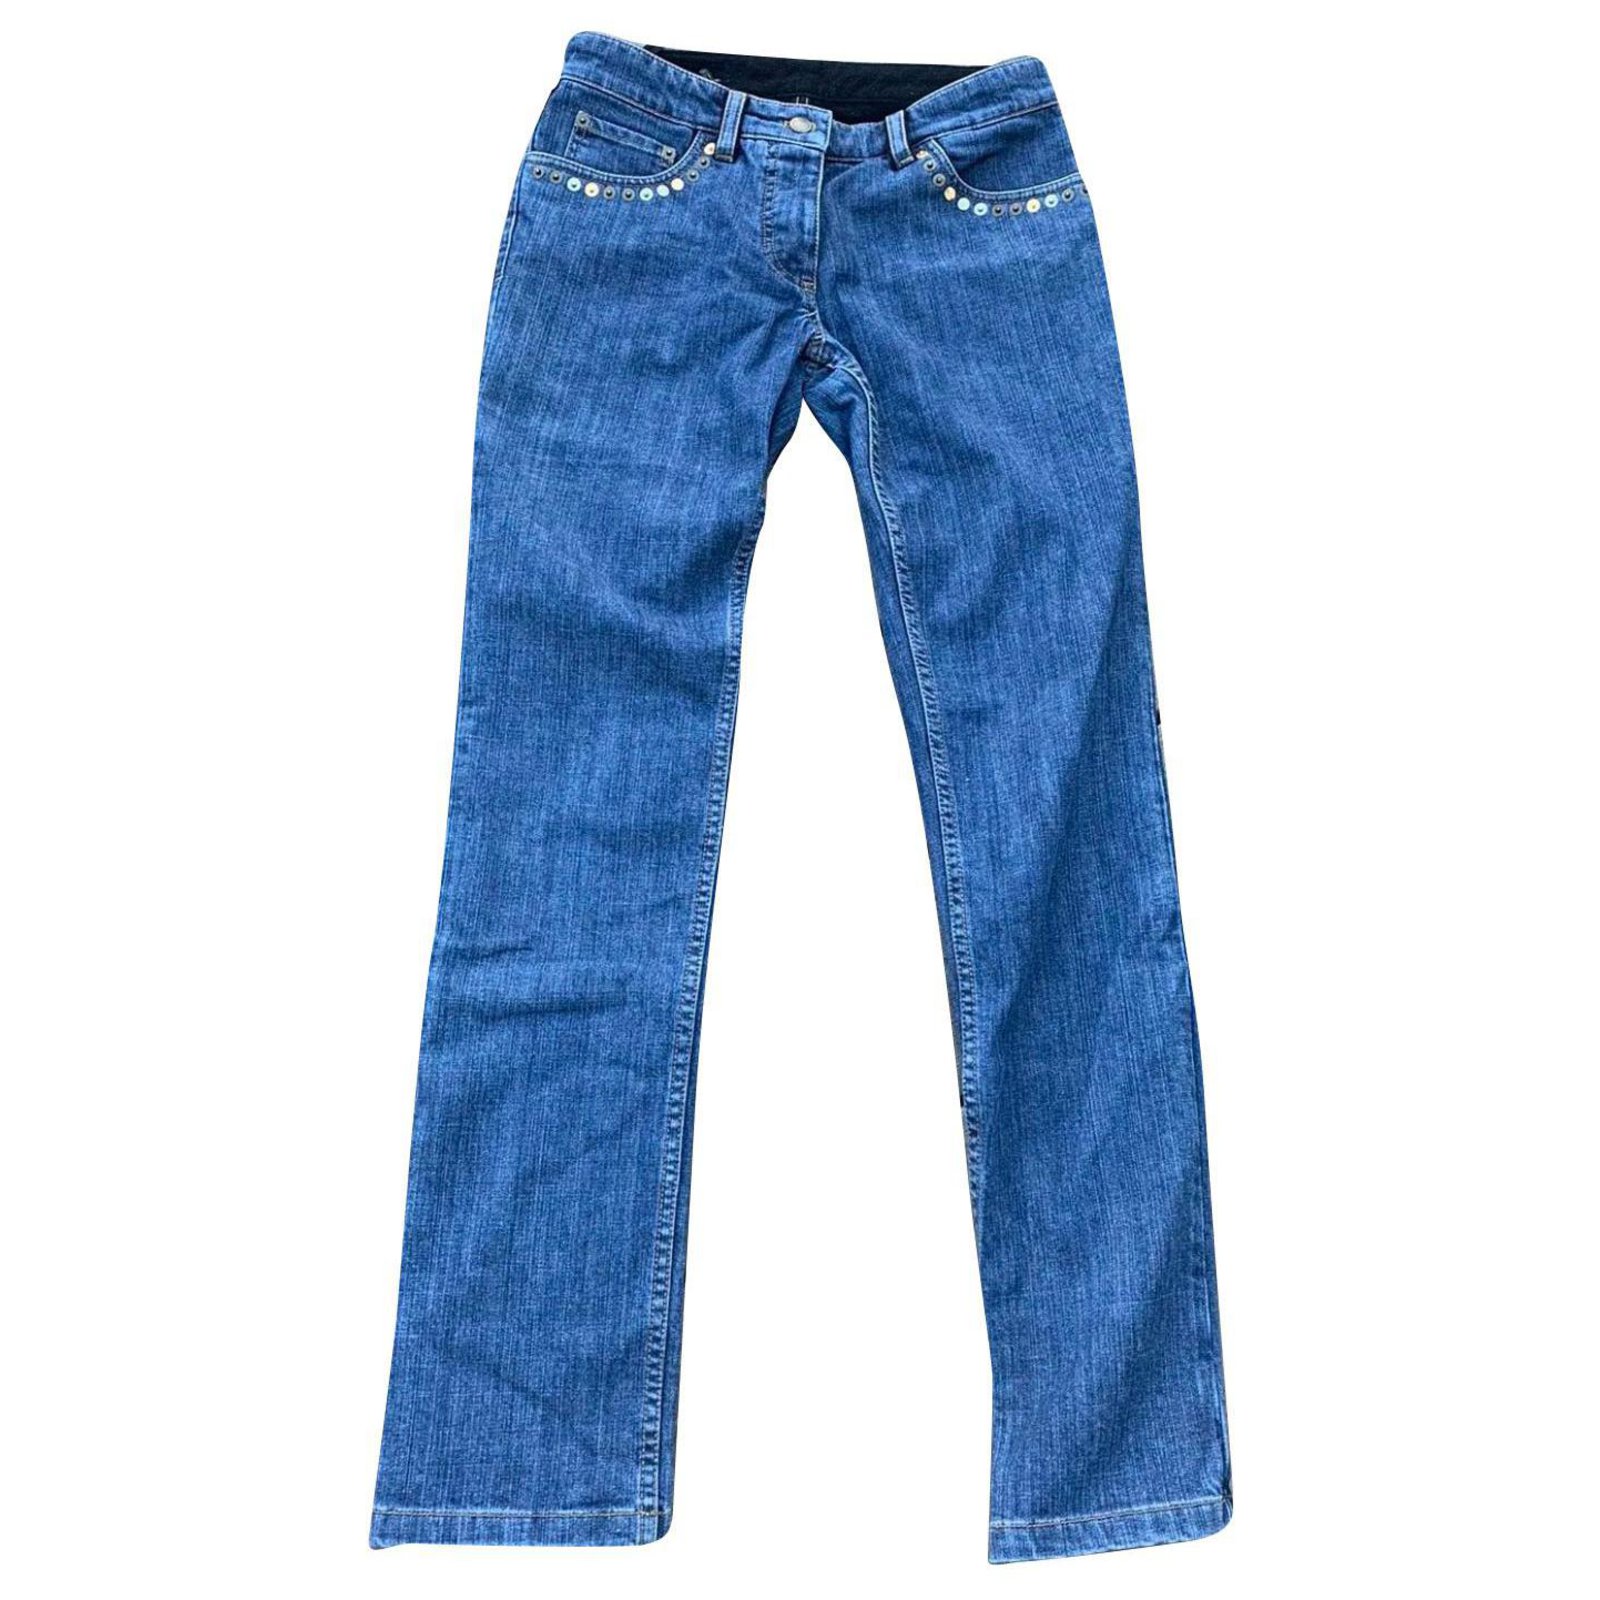 jeans louis vuitton uomo